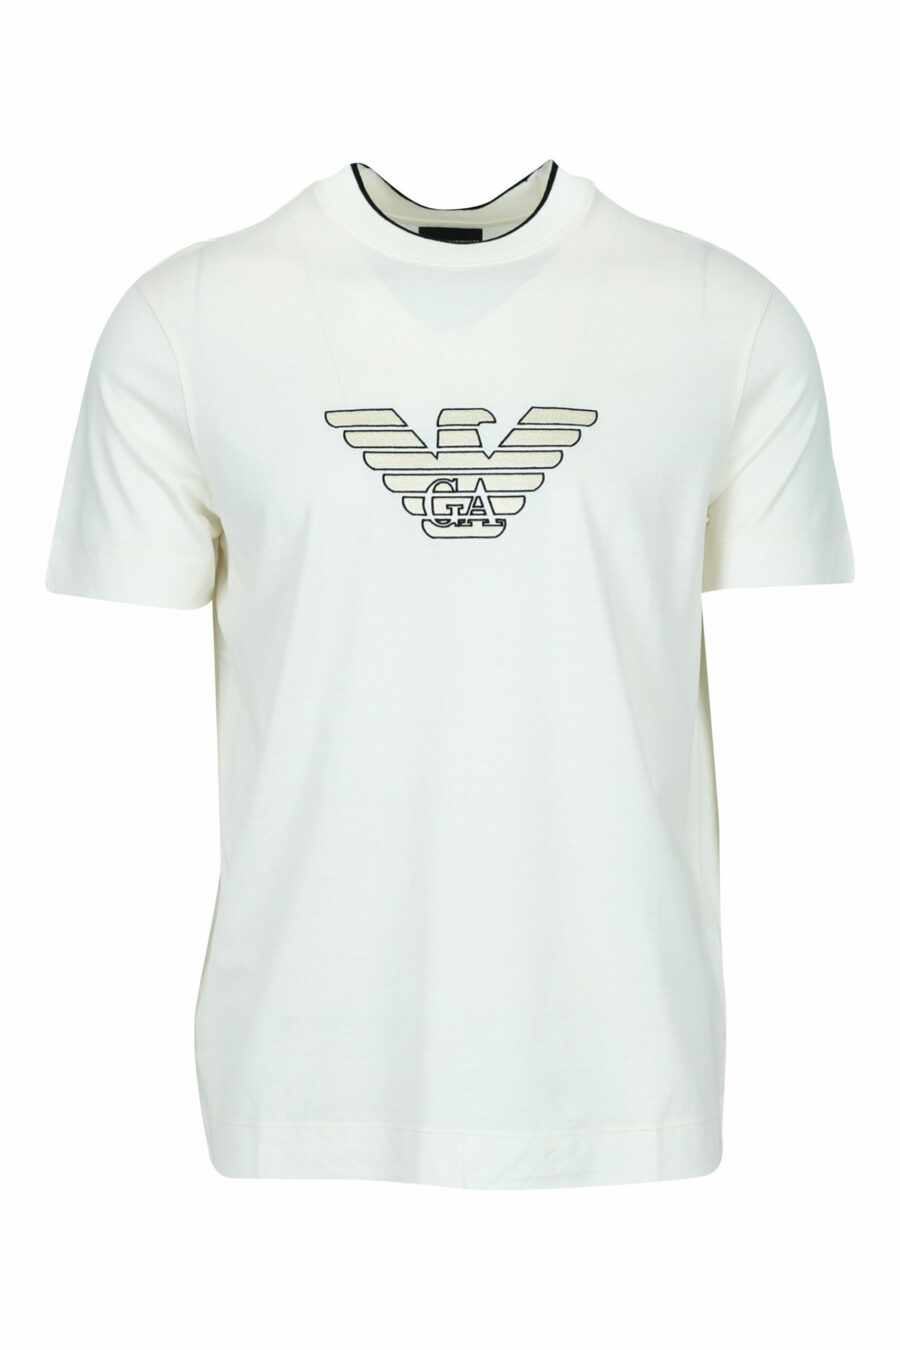 Cremefarbenes T-Shirt mit zentriertem Adler-Maxilogo - 8058947986996 skaliert